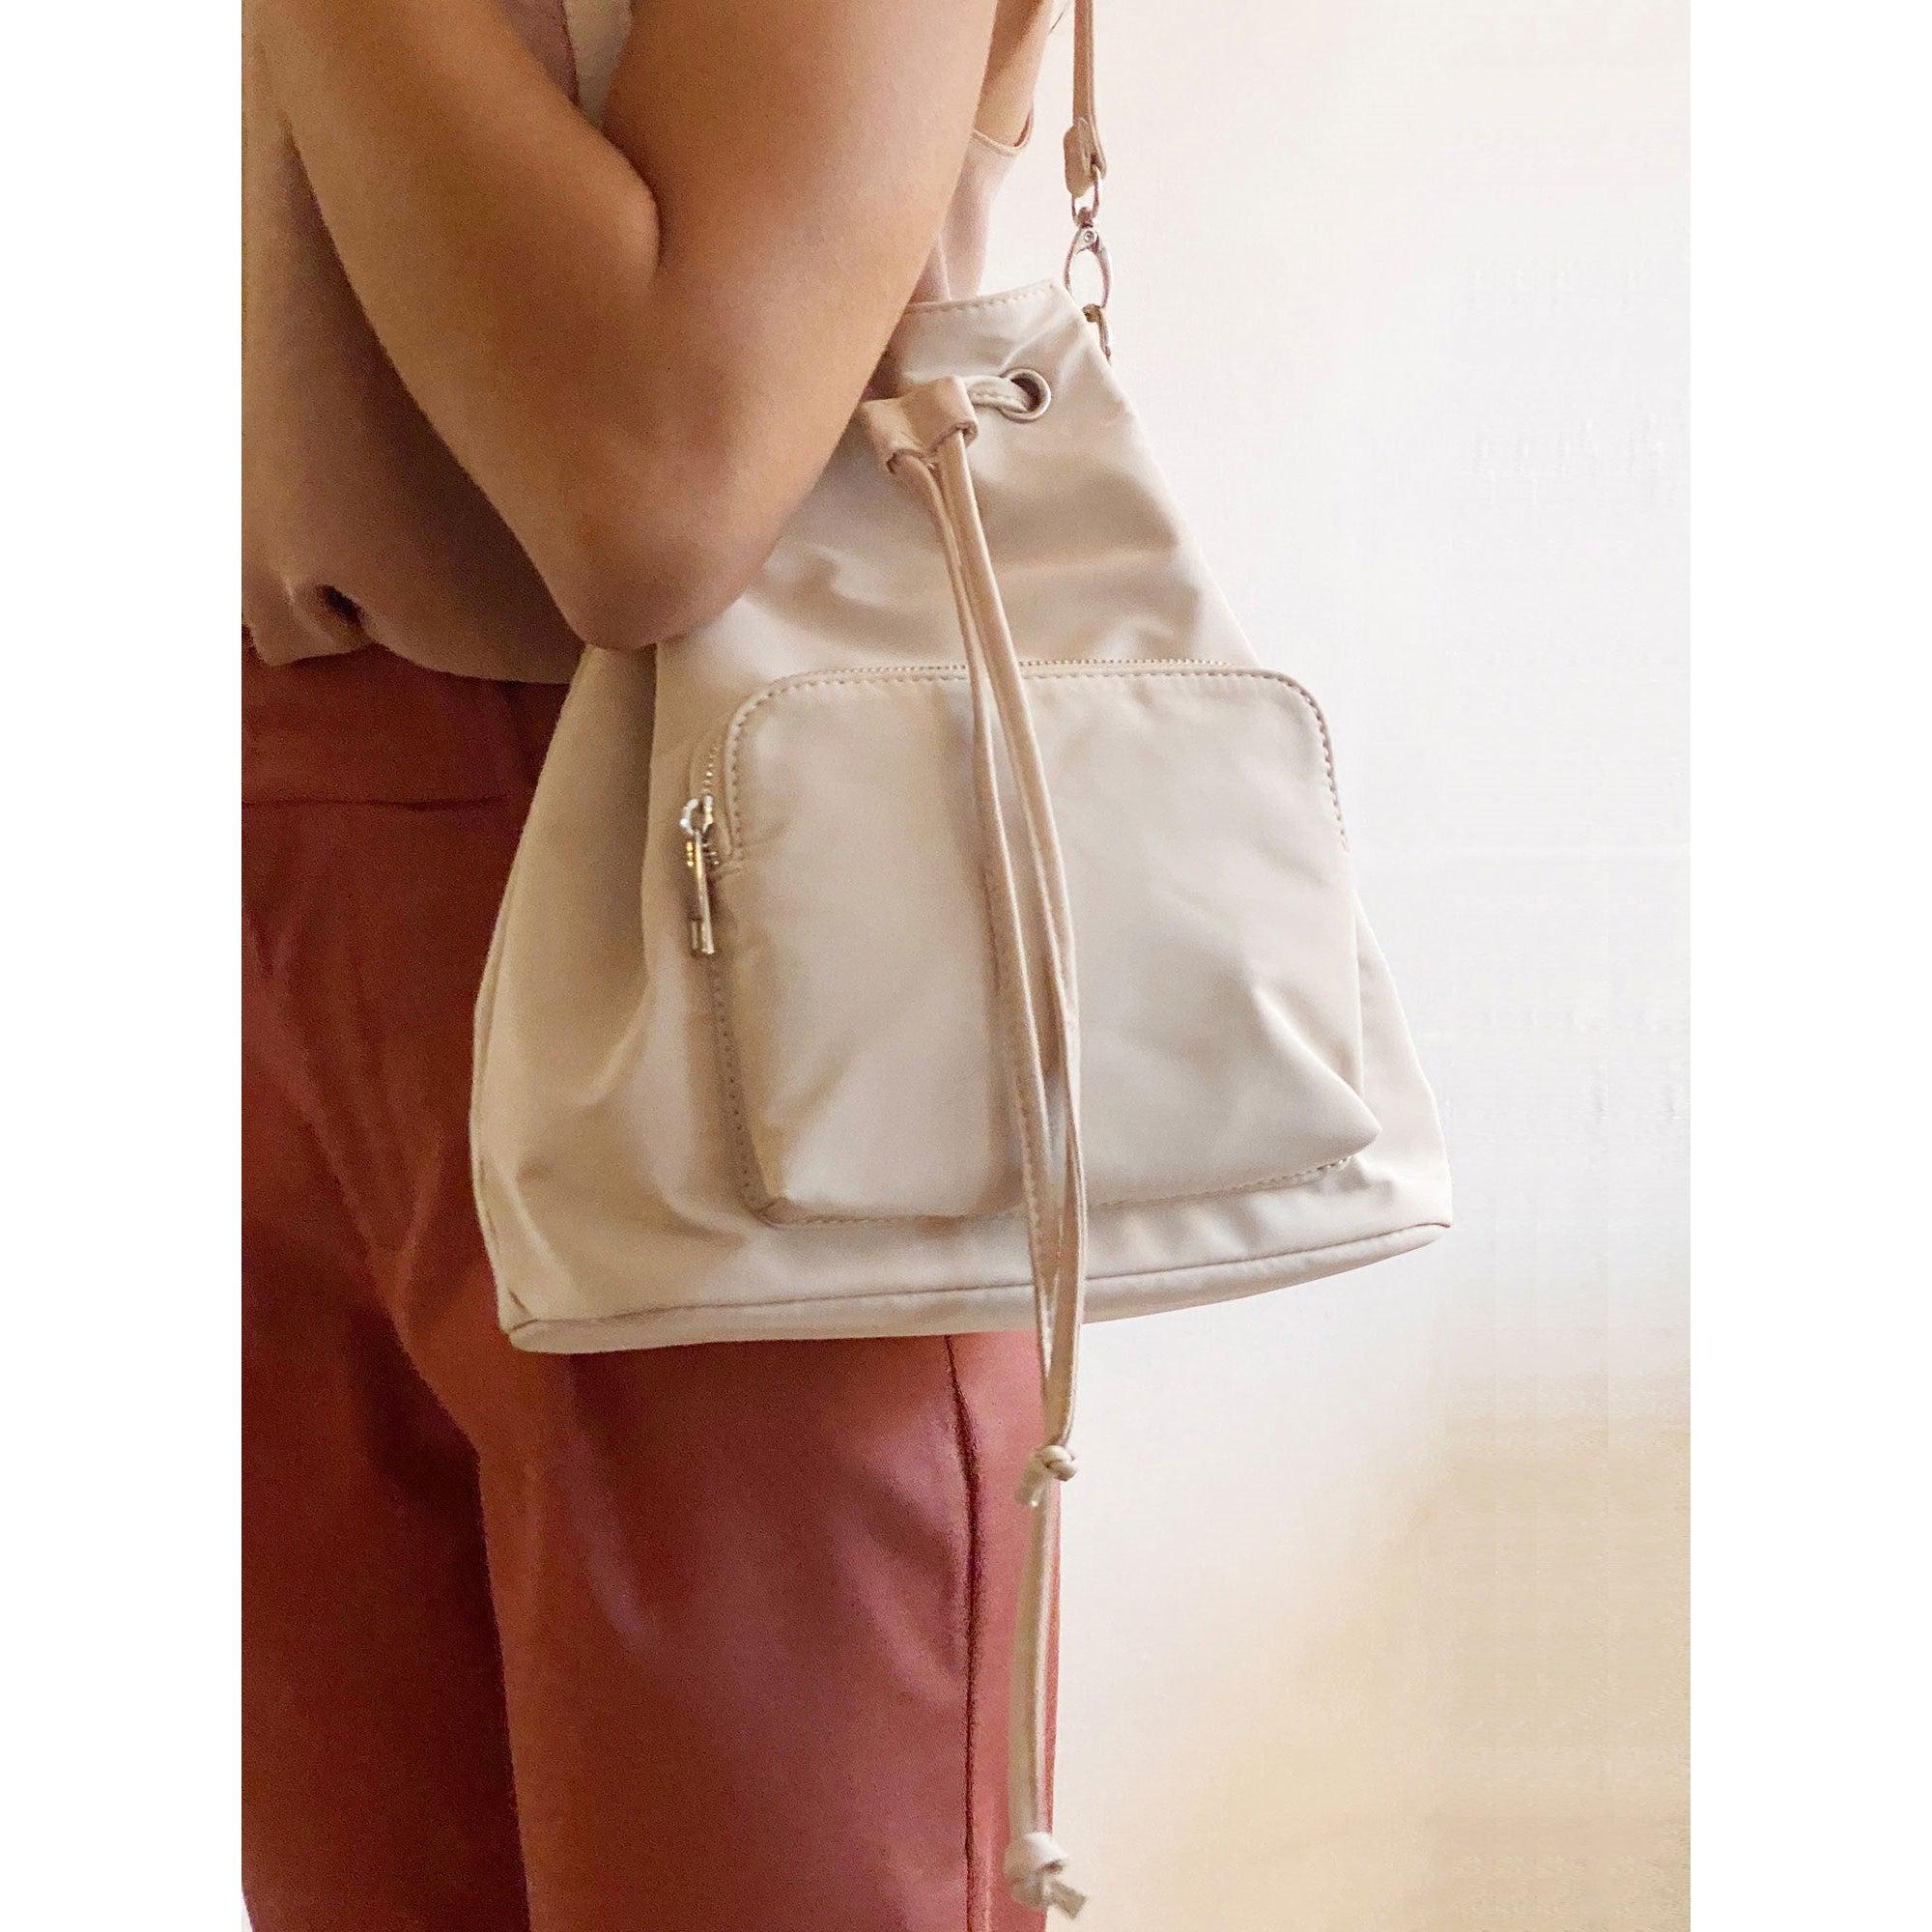 Juicy Couture Denim Backpacks for Women | Mercari